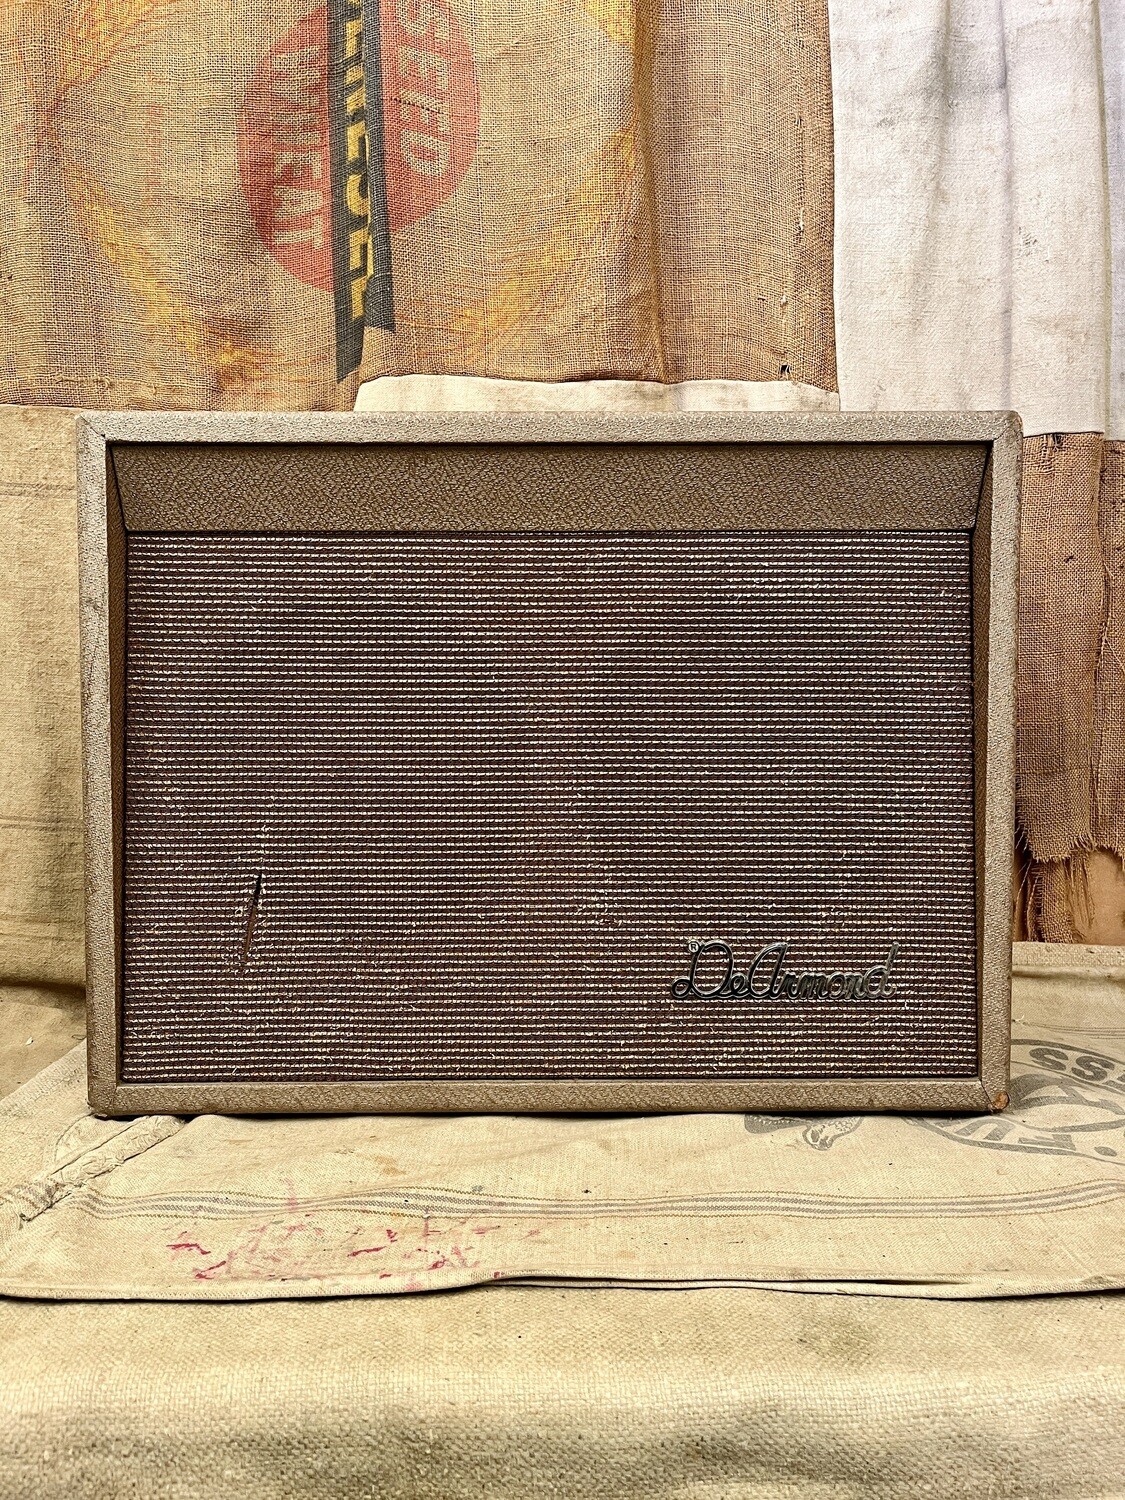 1960 Dearmond R25-T 2x10" Amplifier Brown Tan